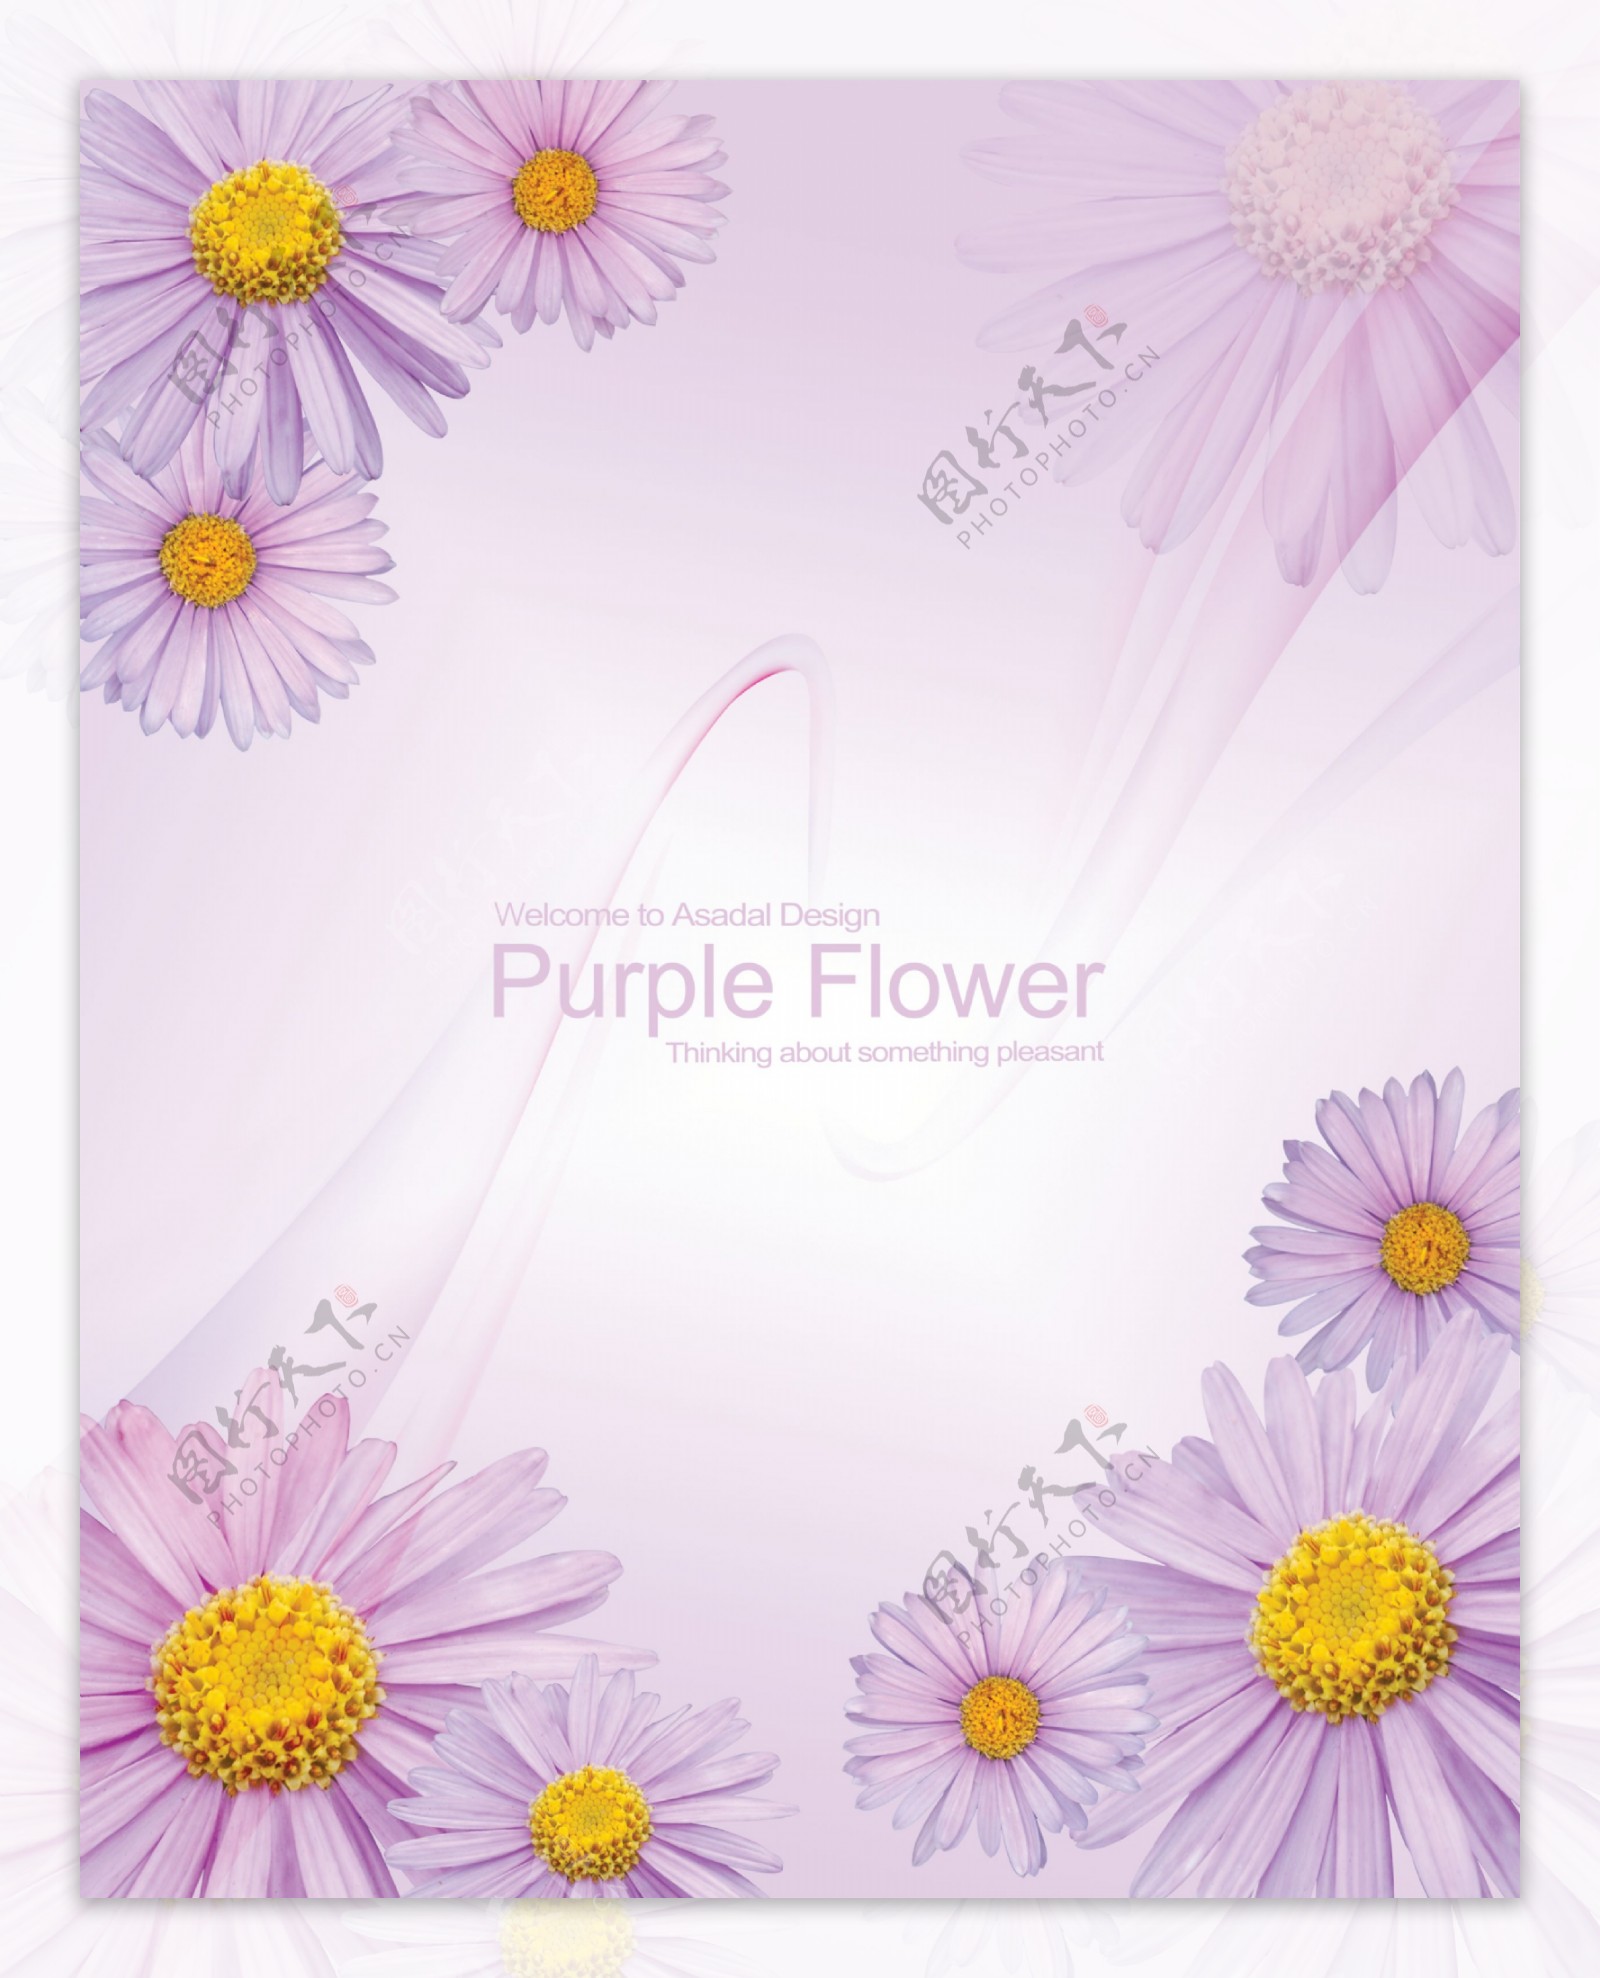 紫菊花